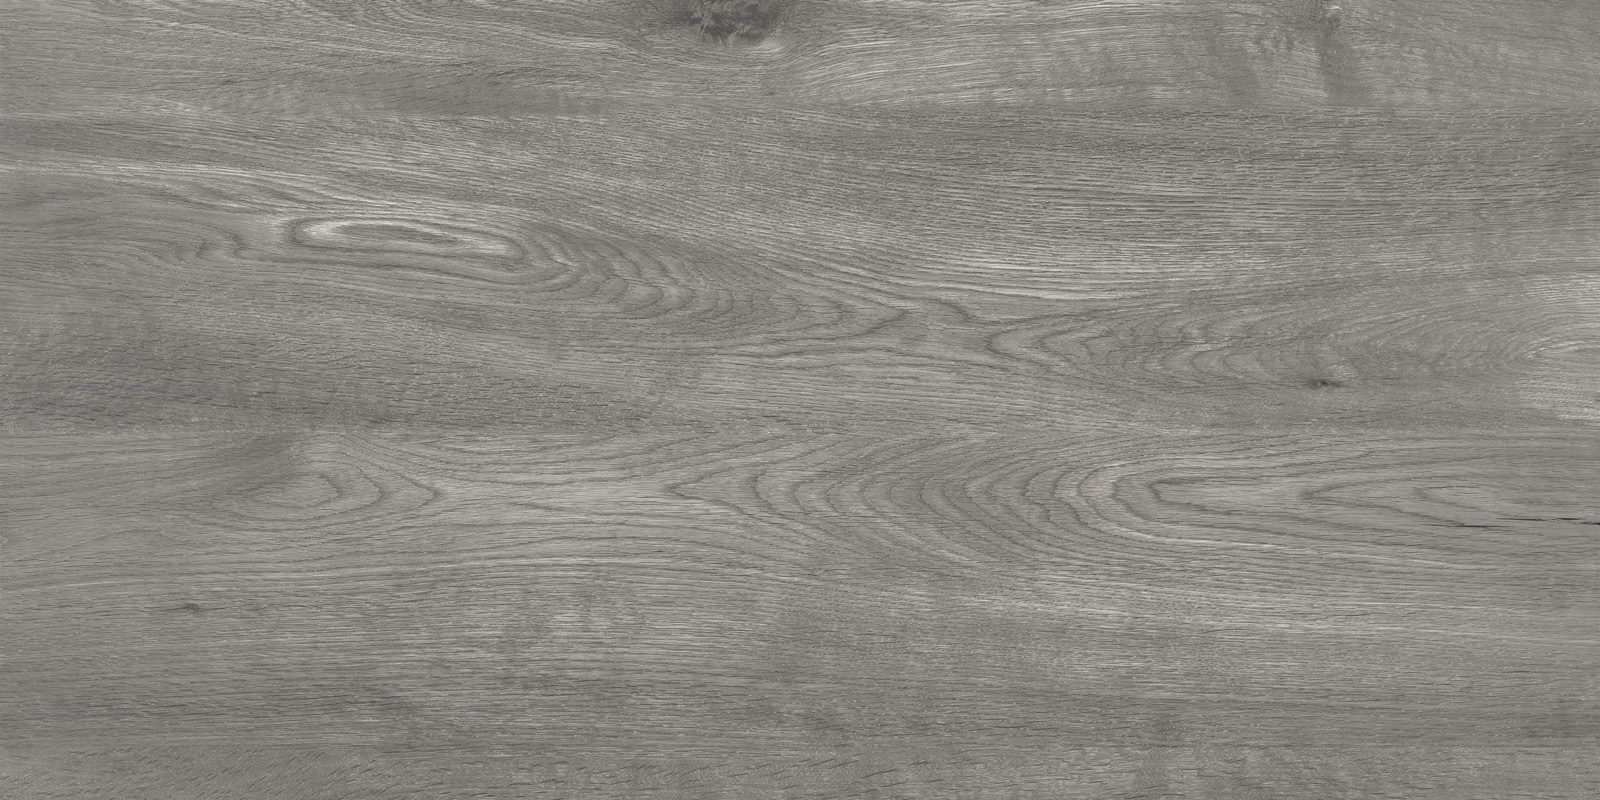 Плитка для пола Alpina Wood grey (892940)